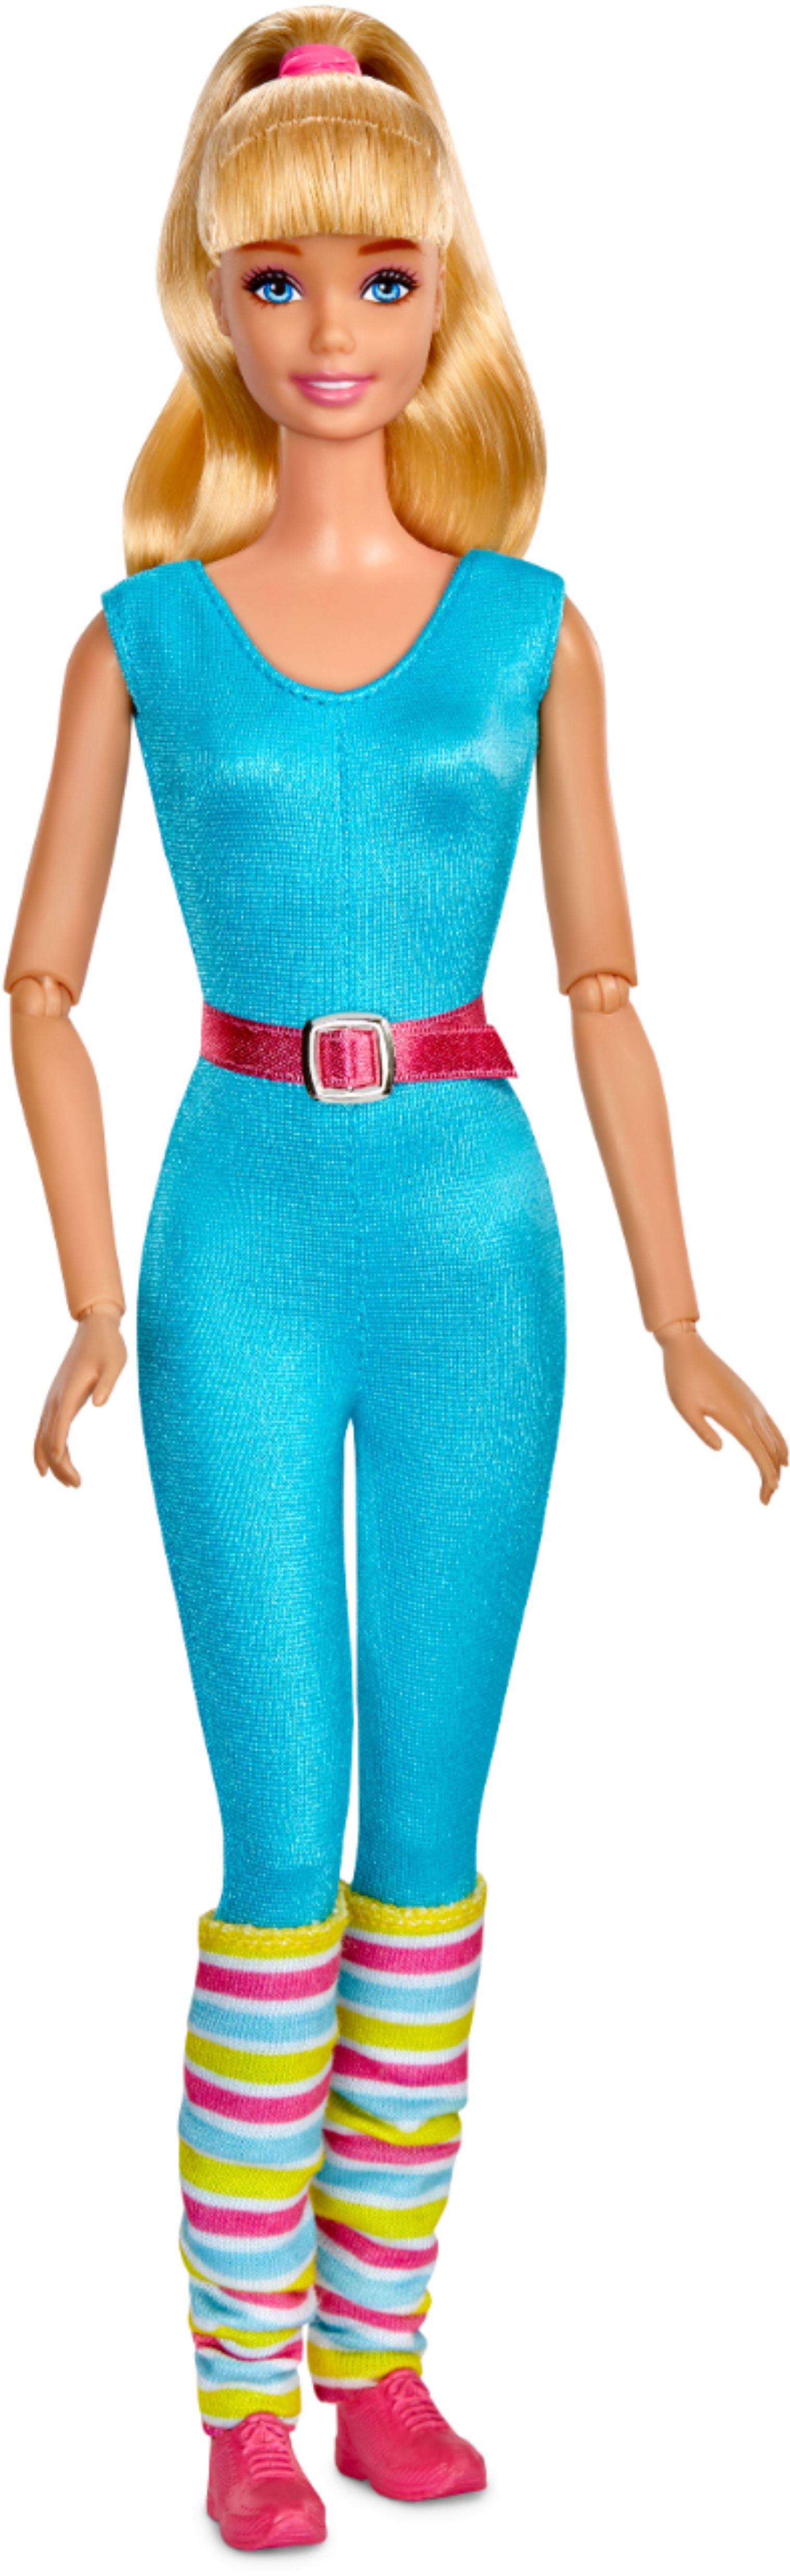 Best Buy: Toy Story 4 Barbie 11.5 Doll Blue GFL78